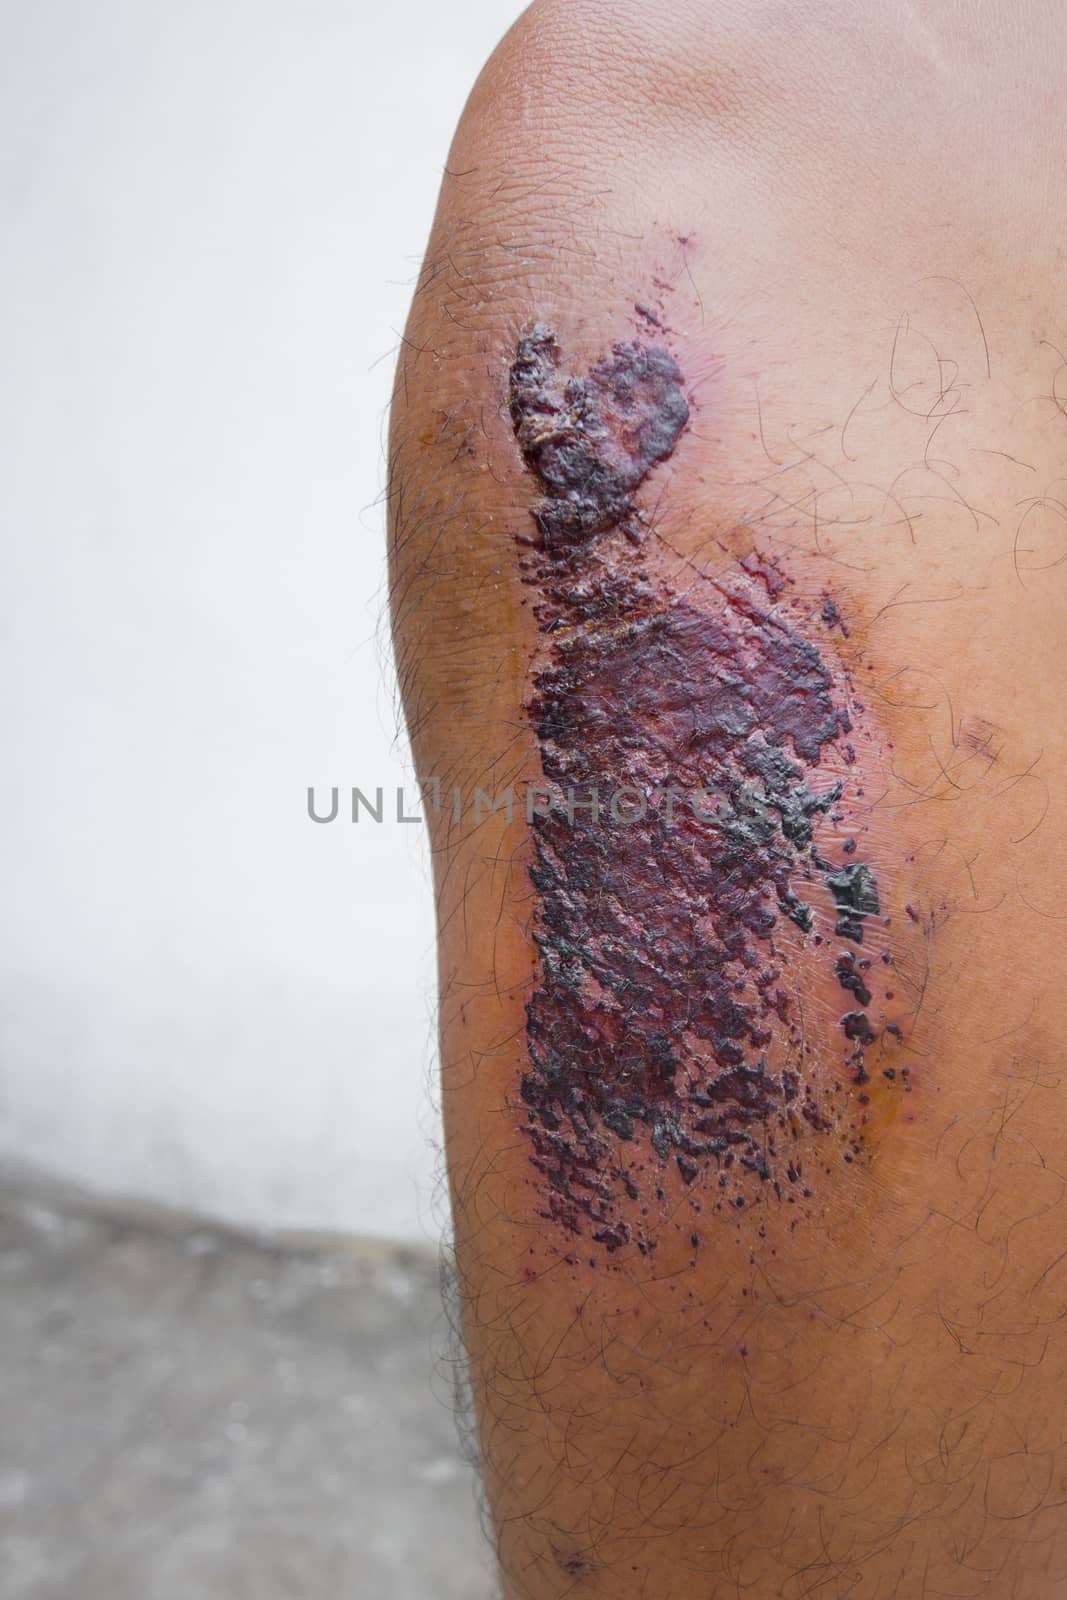 scab skin of patient's knee